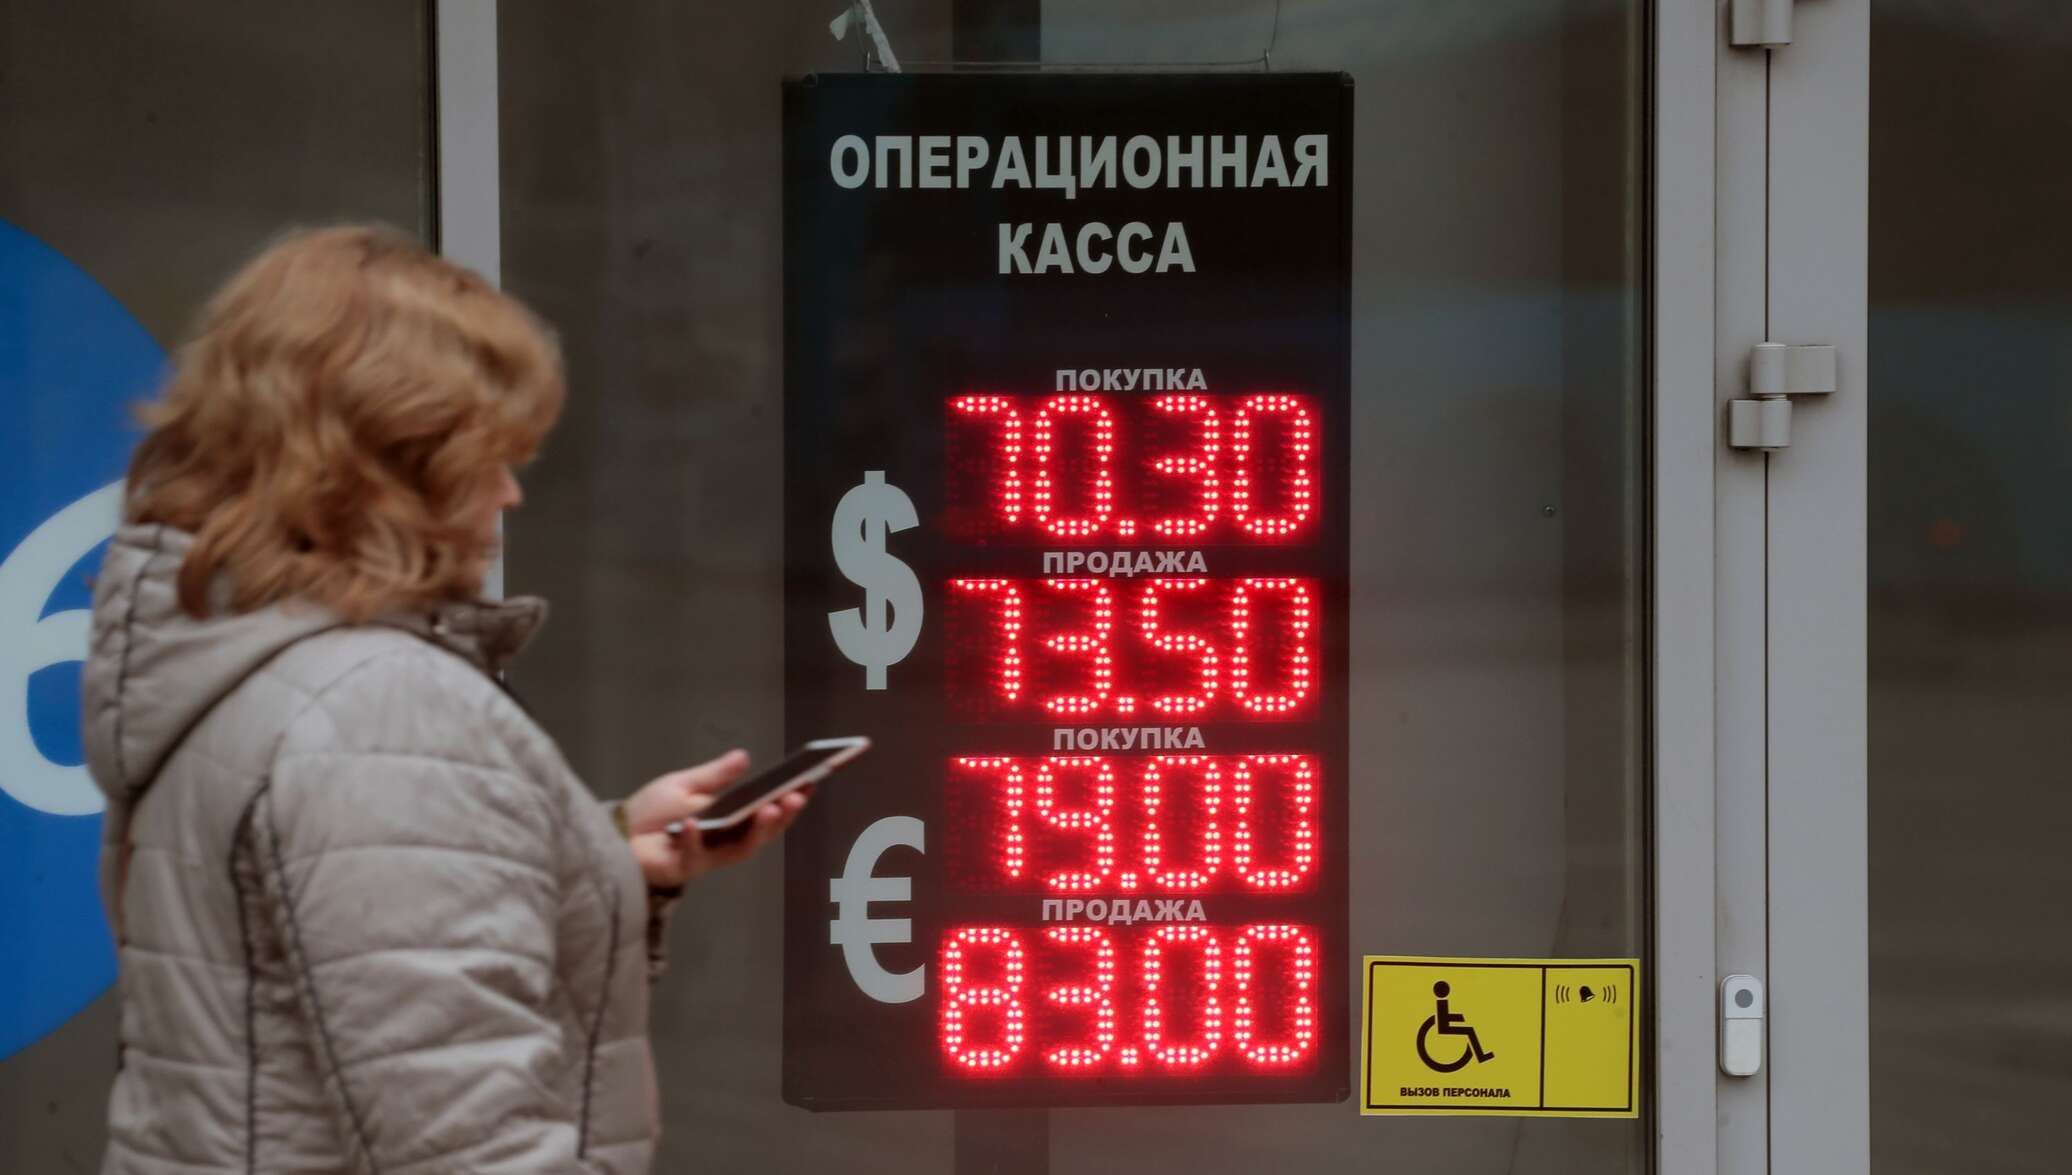 Доллар рубль конец